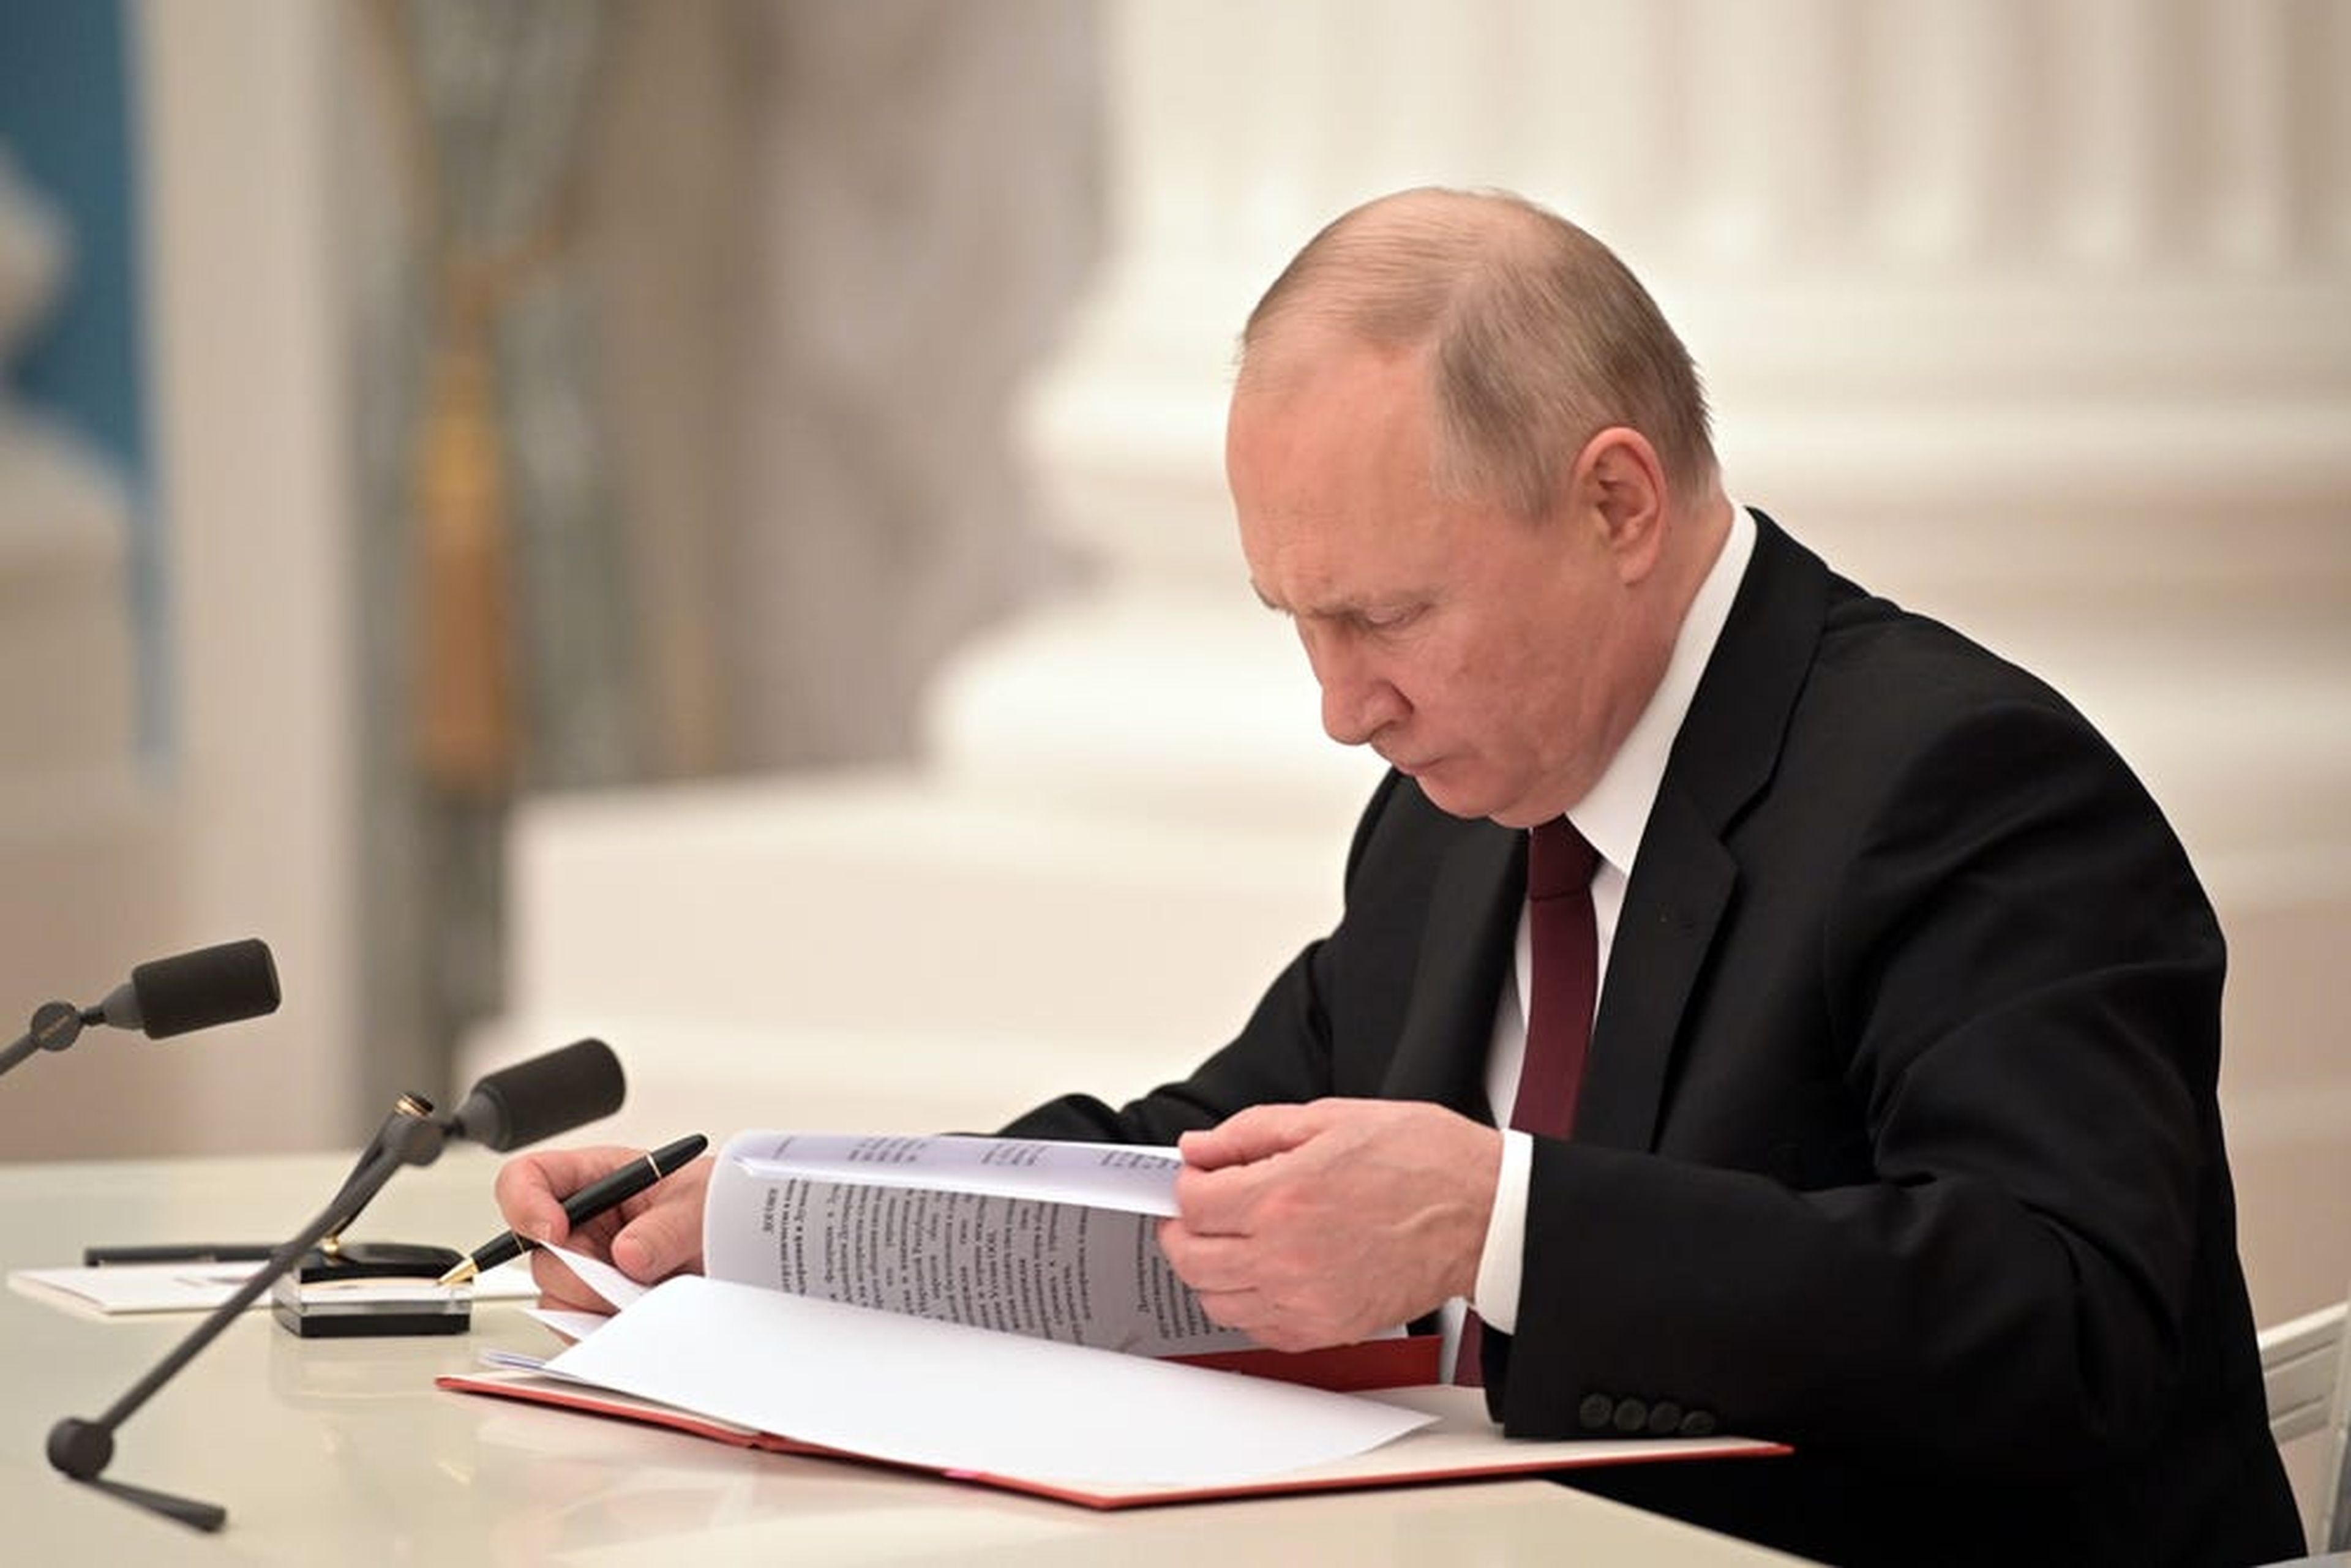 El presidente de Rusia, Vladimir Putin, ha firmado decretos que reconocen la independencia de Donetsk y Luhansk. Las tropas de Moscú entraron el lunes en estas zonas, lo que aumenta la posibilidad de una guerra abierta entre Rusia y Ucrania.